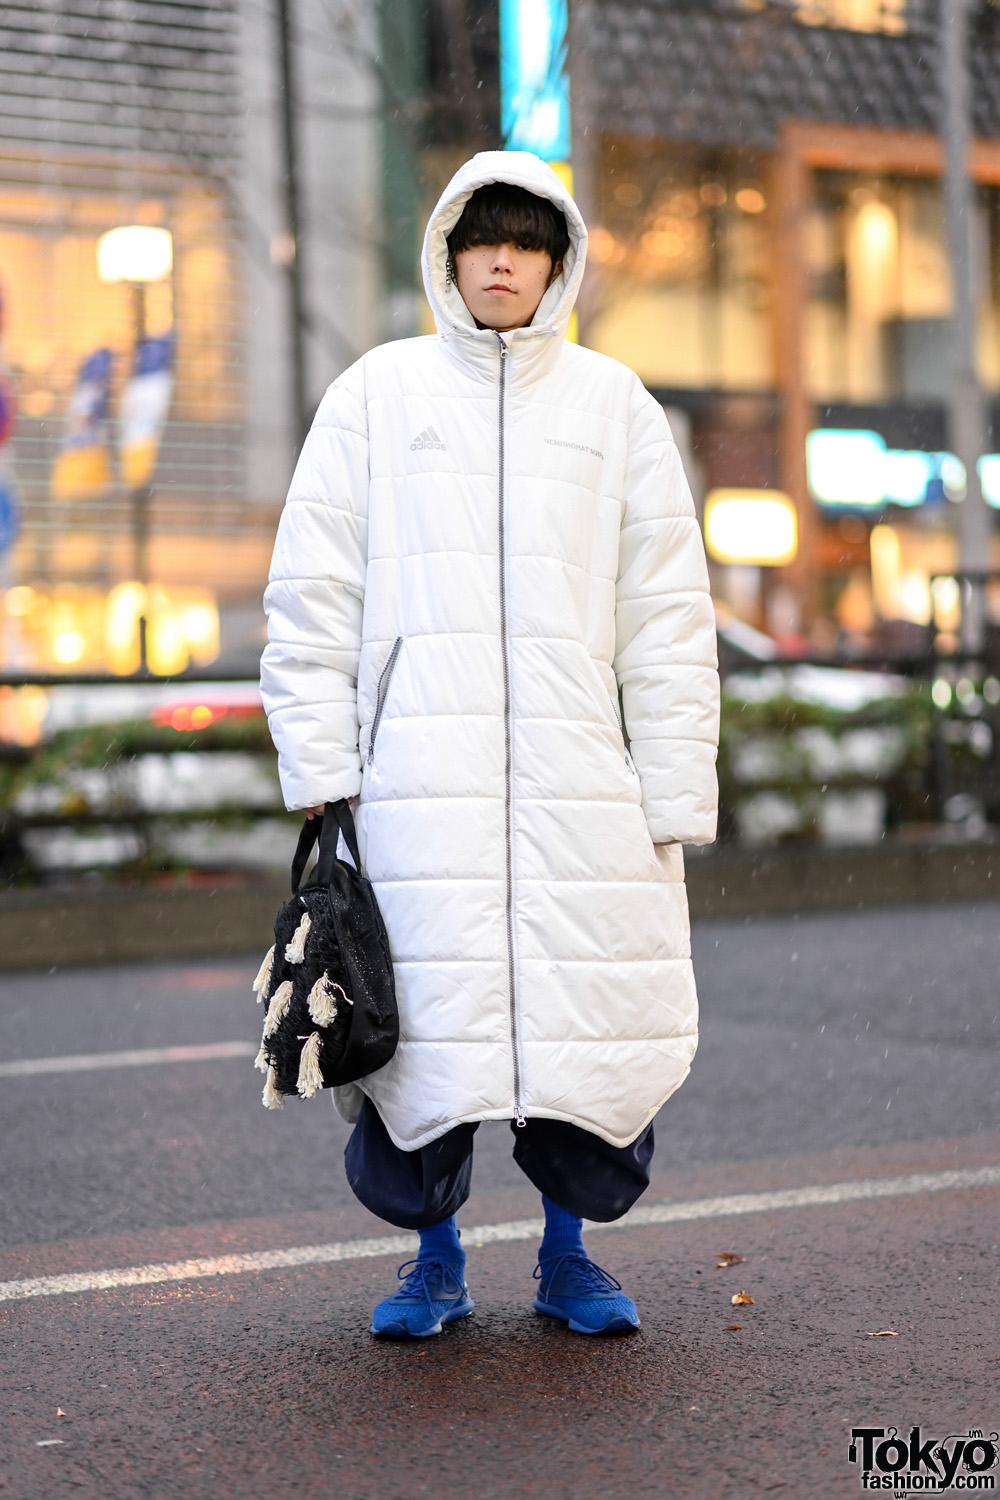 Harajuku Street Style w/ Gosha Rubchinskiy x Adidas Hooded Puffer Coat, Christopher Nemeth Fringe Bag, Maison Margiela & Reebok Sneakers